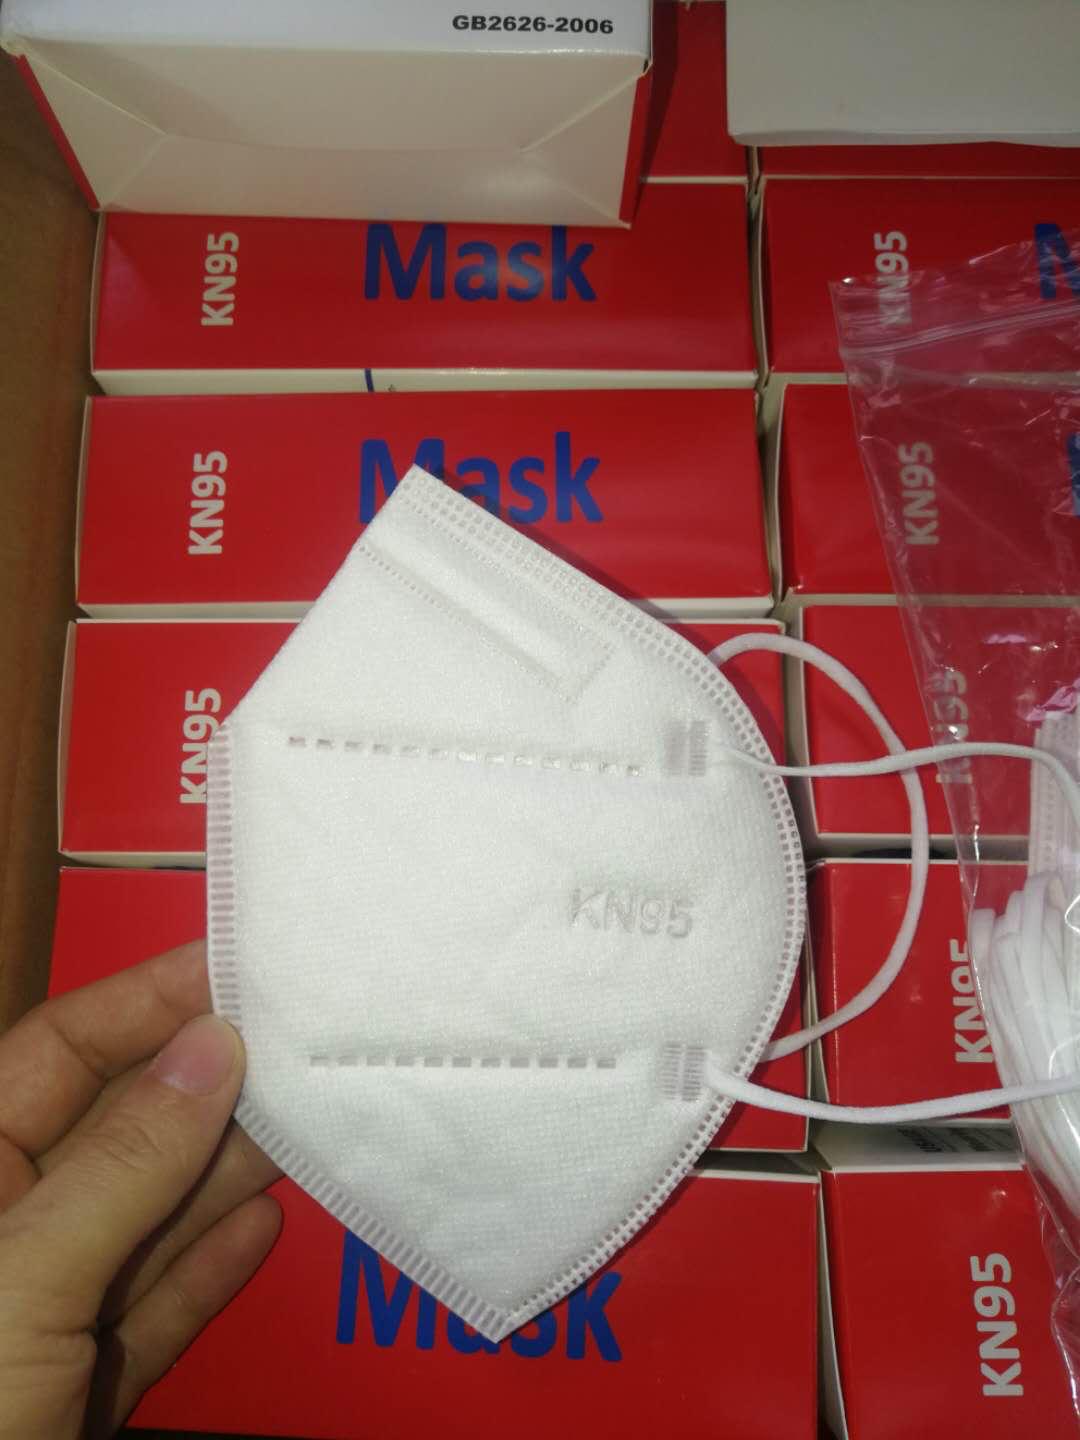 Kn95 Masks - 10 Pack